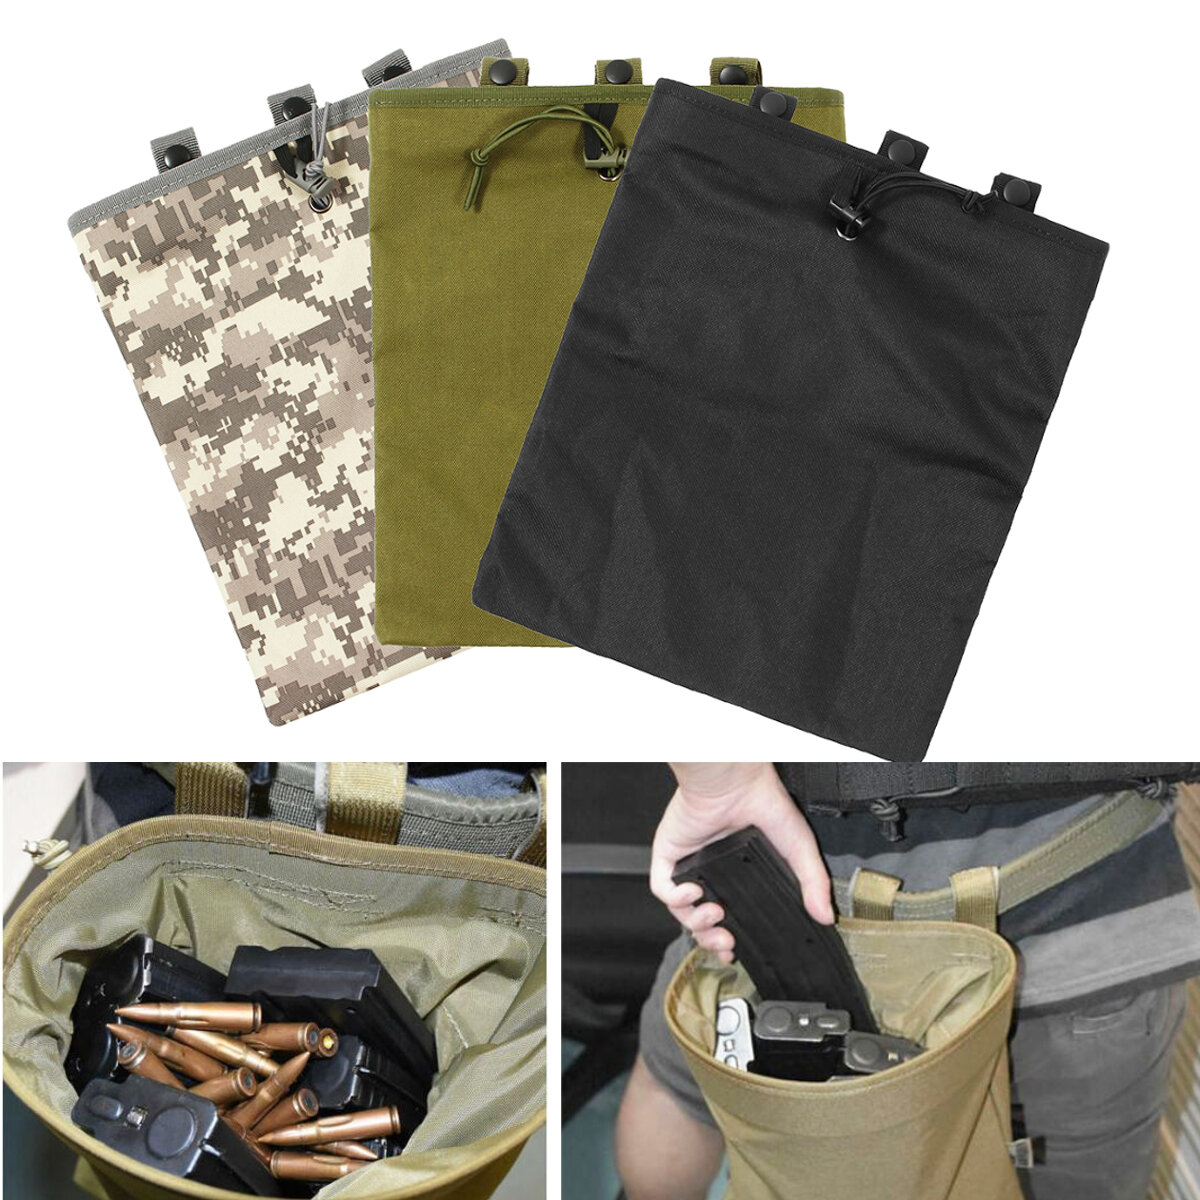 Taktische Tasche aus Oxford-Stoff in der Größe 30x25 cm mit Magazinhalter und Munitionstasche für Jagd und Angeln.